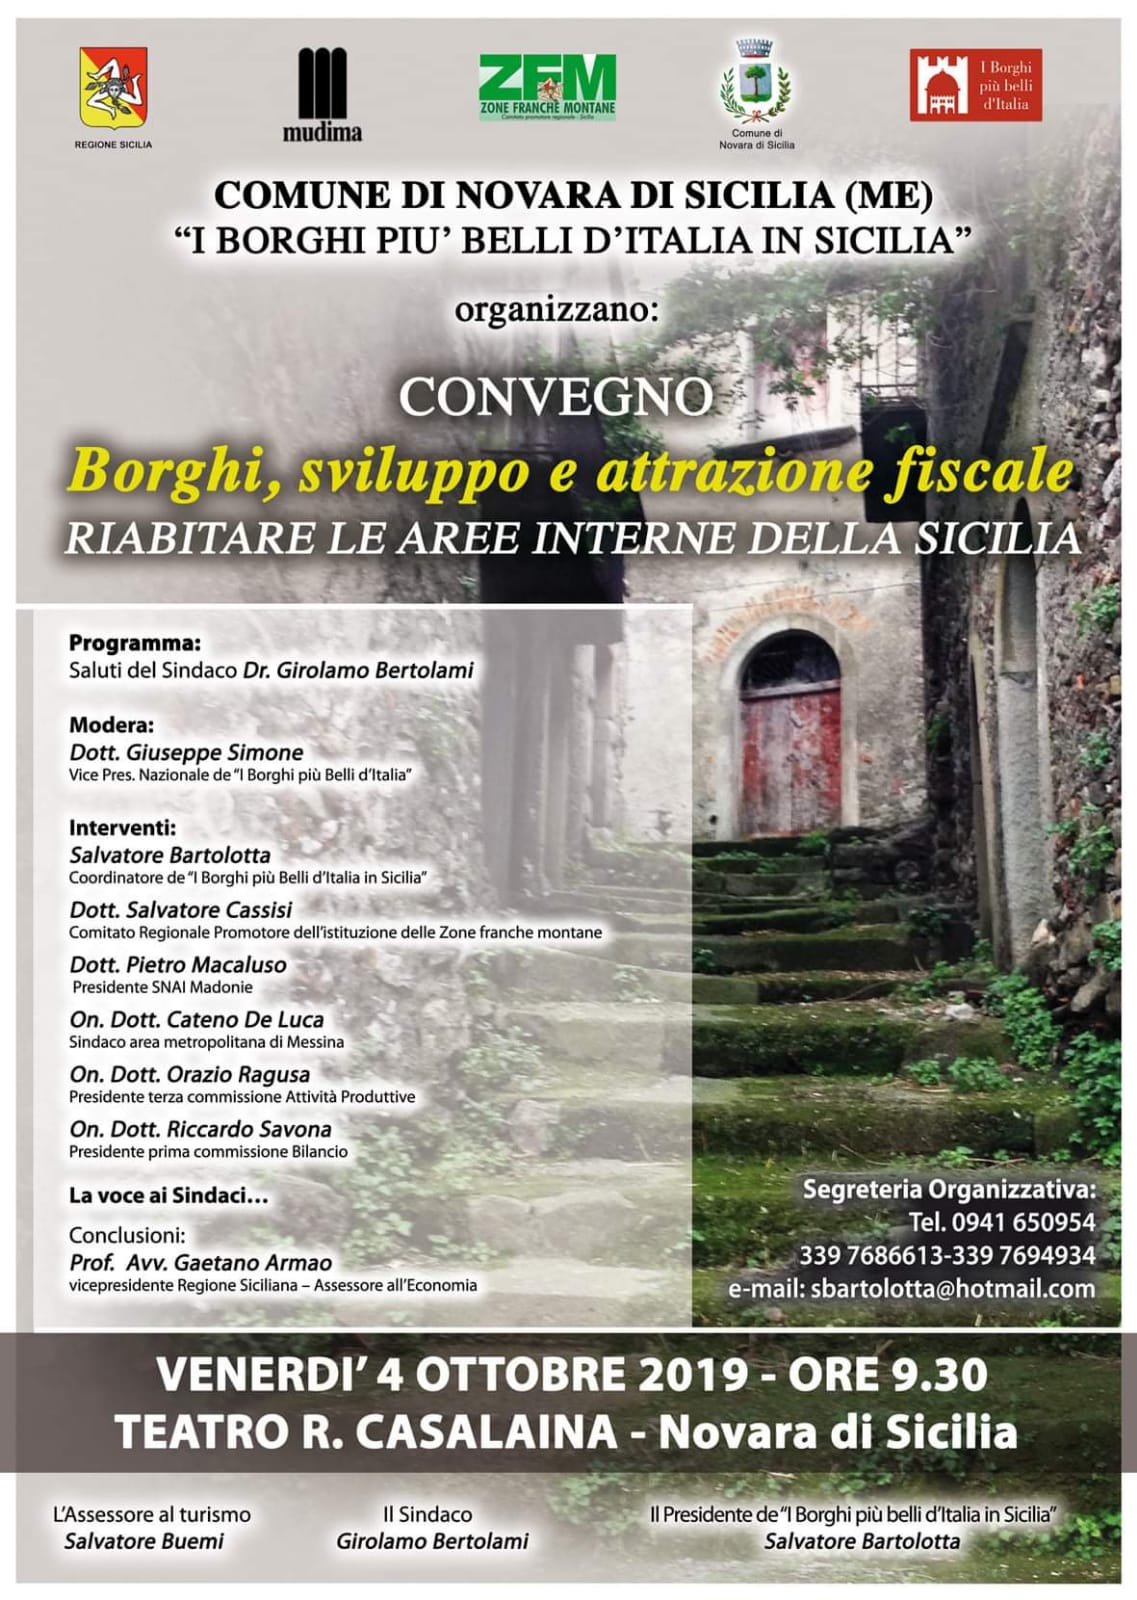 Novara di Sicilia. Il Convegno “Borghi, sviluppo e attrazione fiscale” al Teatro Casalaina 